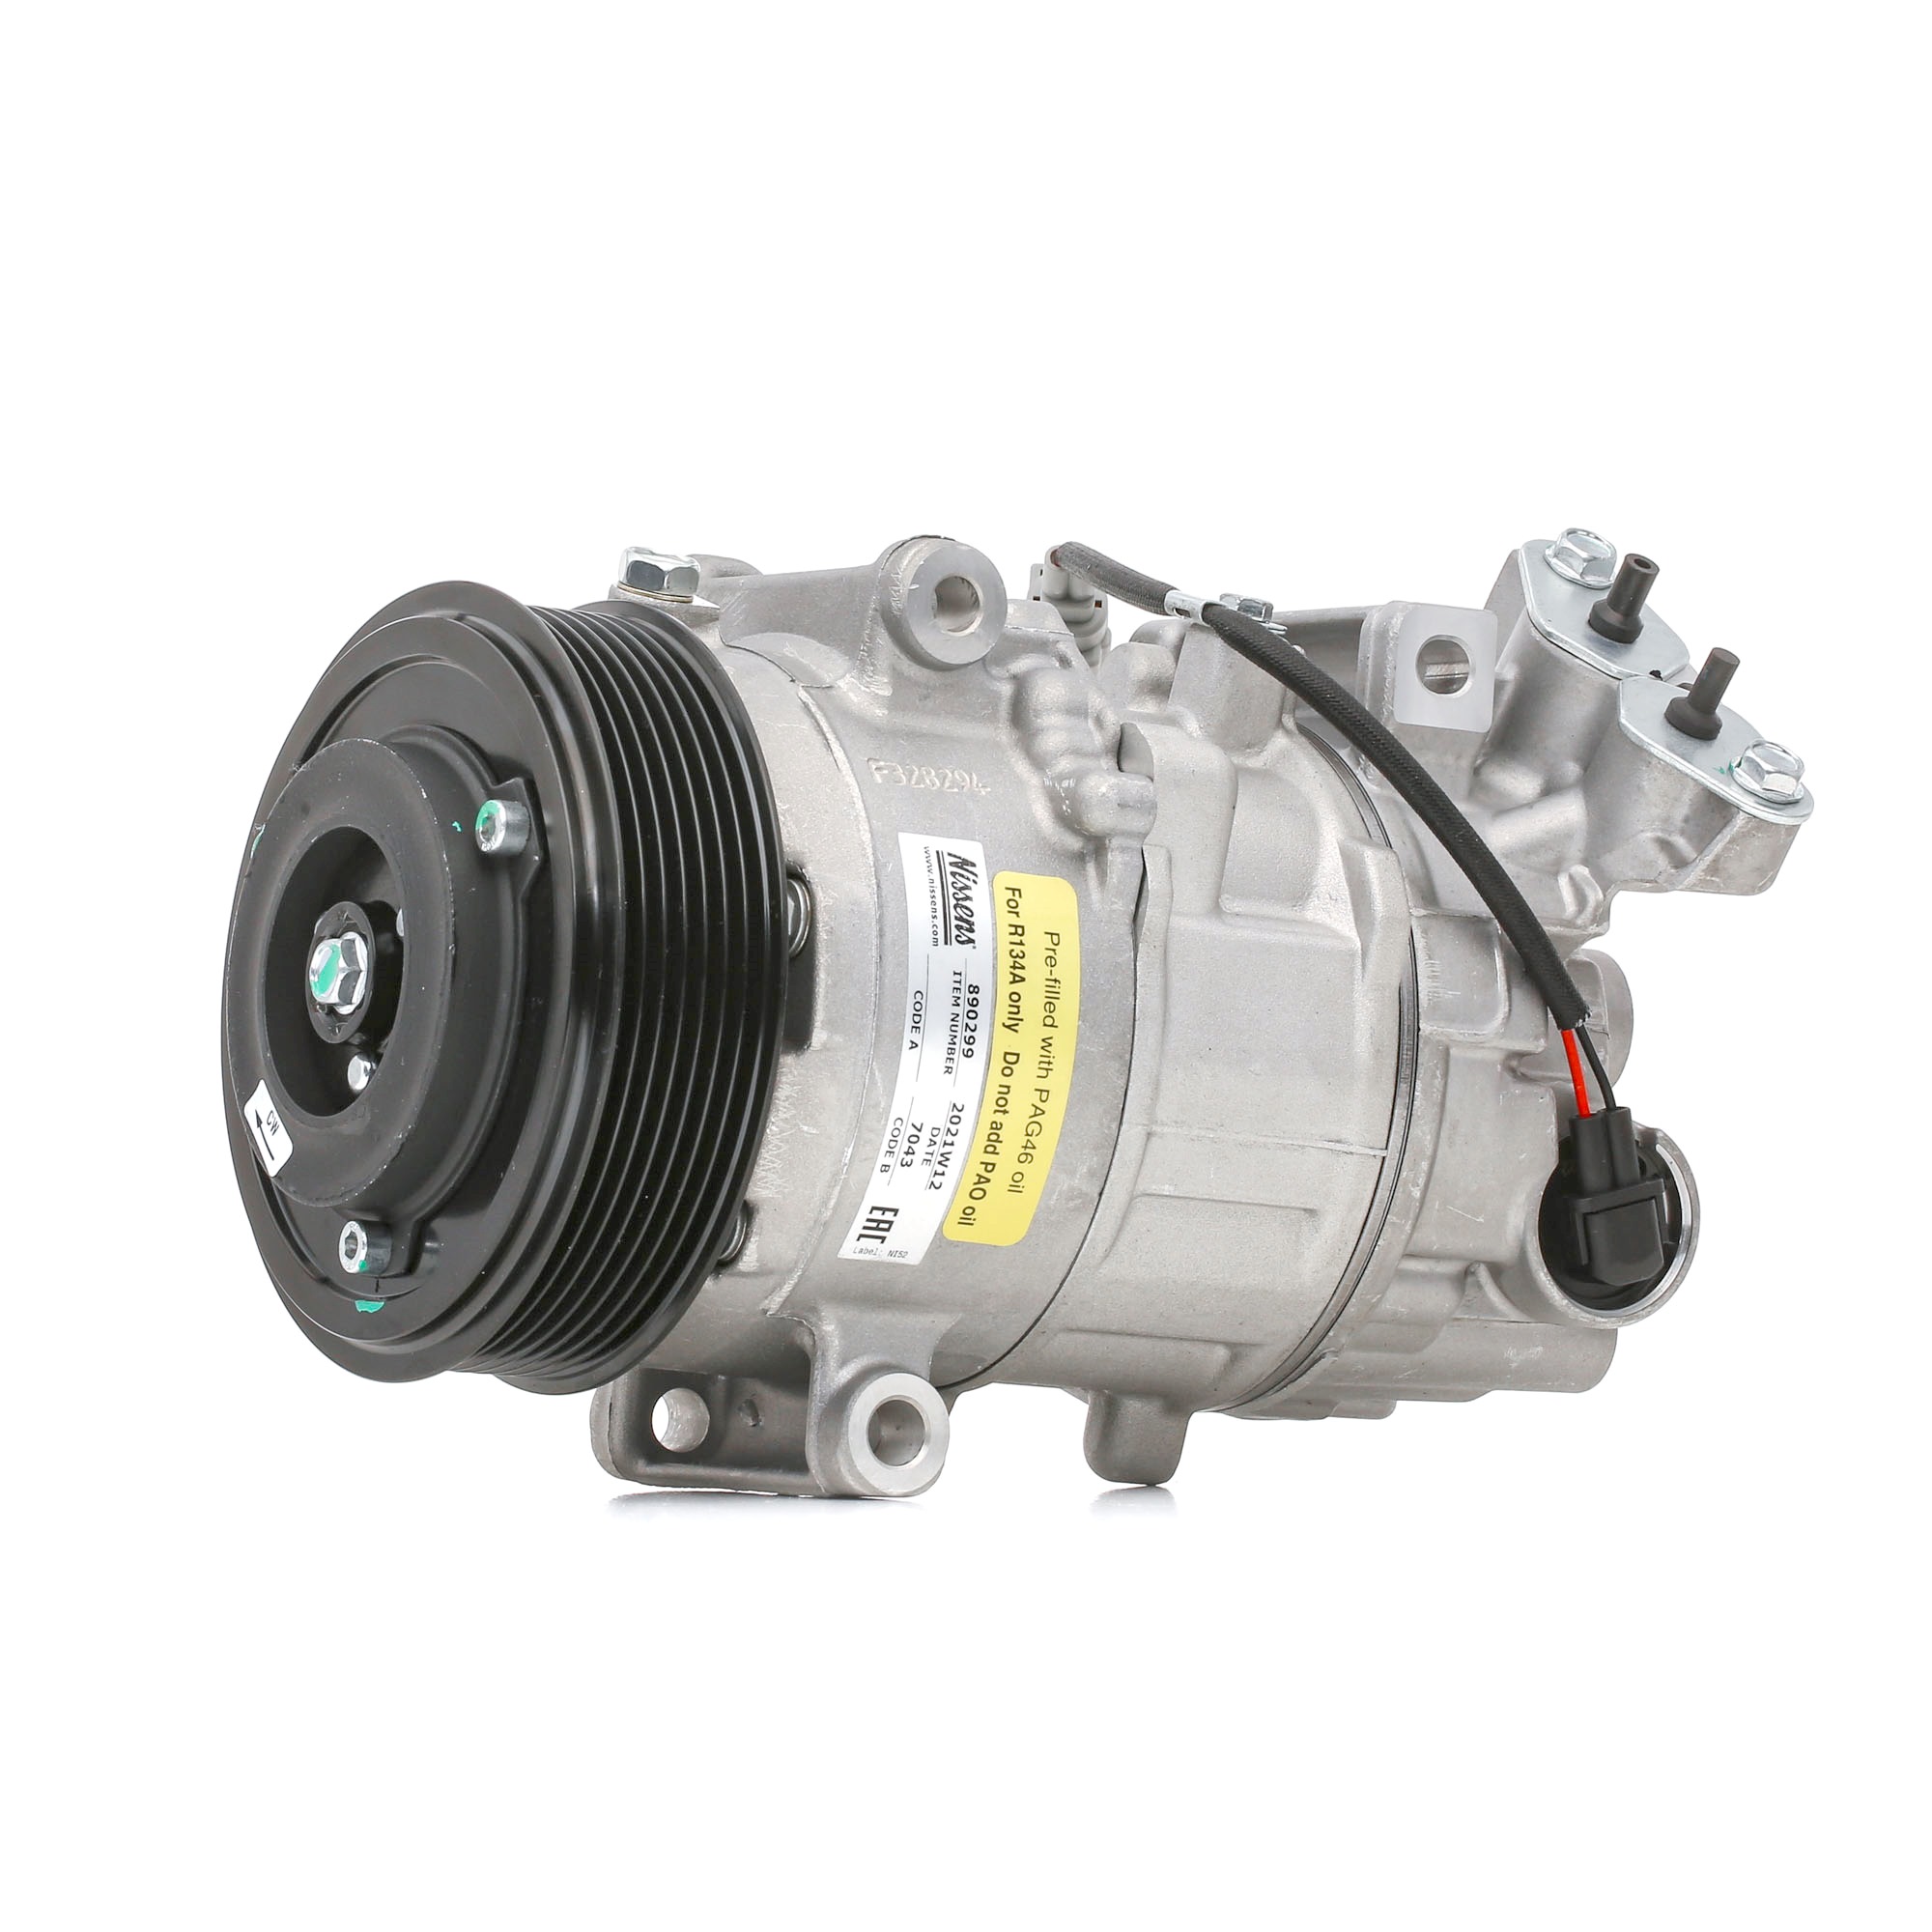 Image of NISSENS Compressore Aria Condizionata RENAULT 890299 7711497391,8200956574 Compressore Climatizzatore,Compressore Clima,Compressore, Climatizzatore